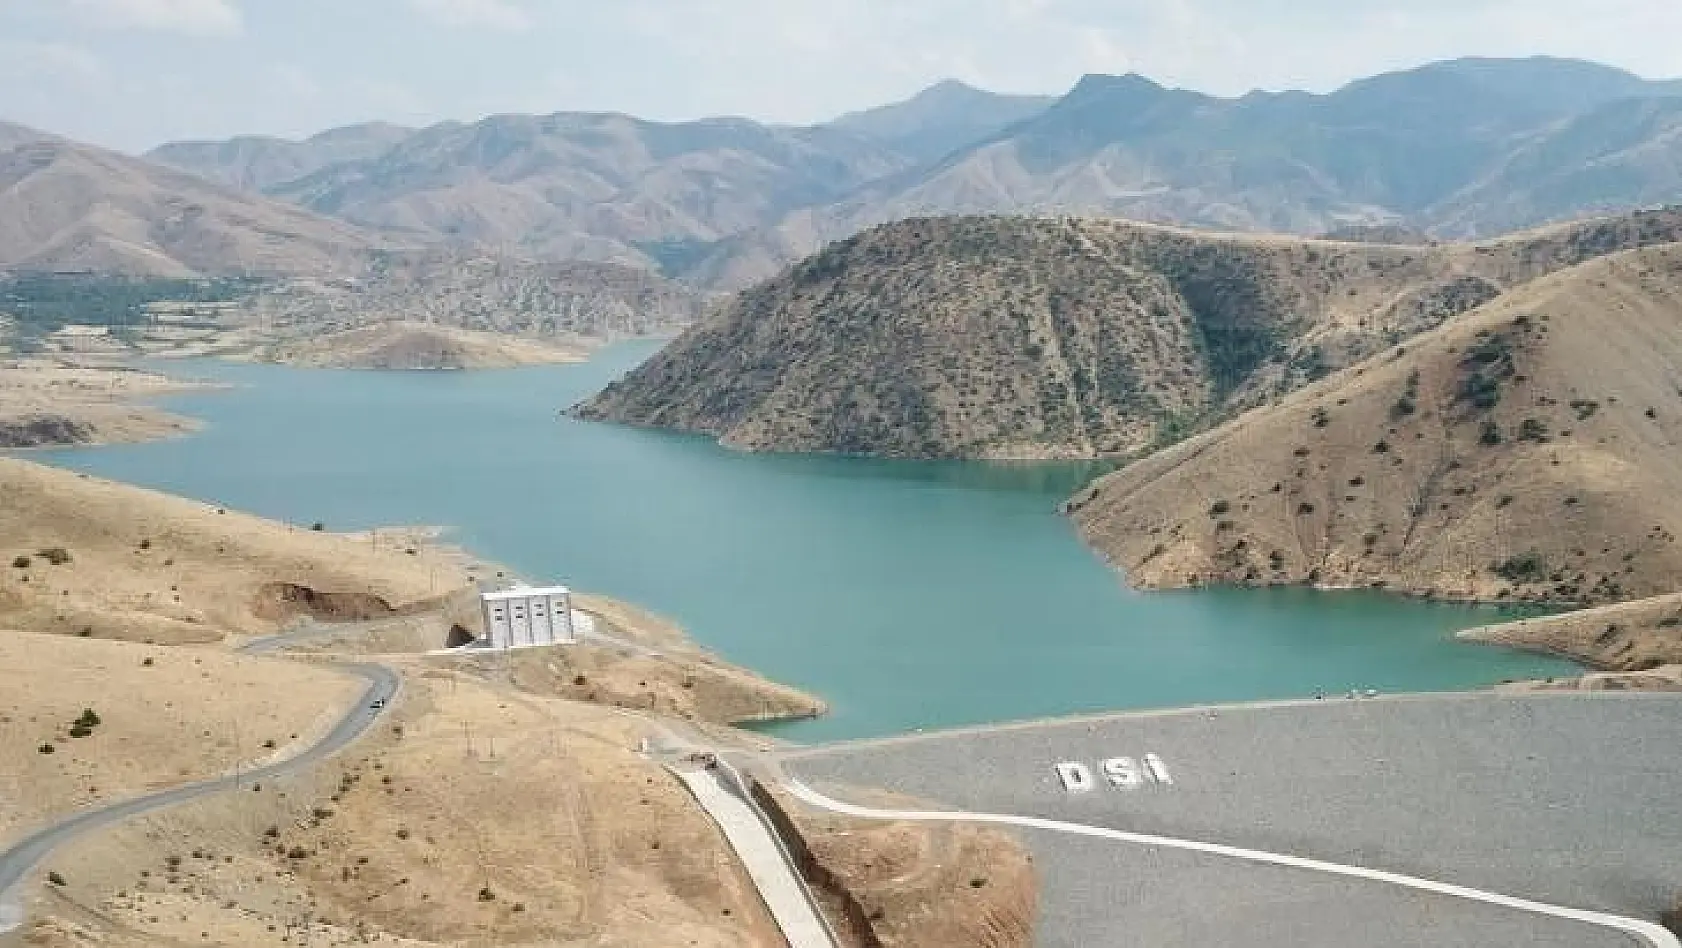 DSİ Genel Müdürü Yıldız,' Elazığ'da son 18 yılda 15 baraj inşa ettik'